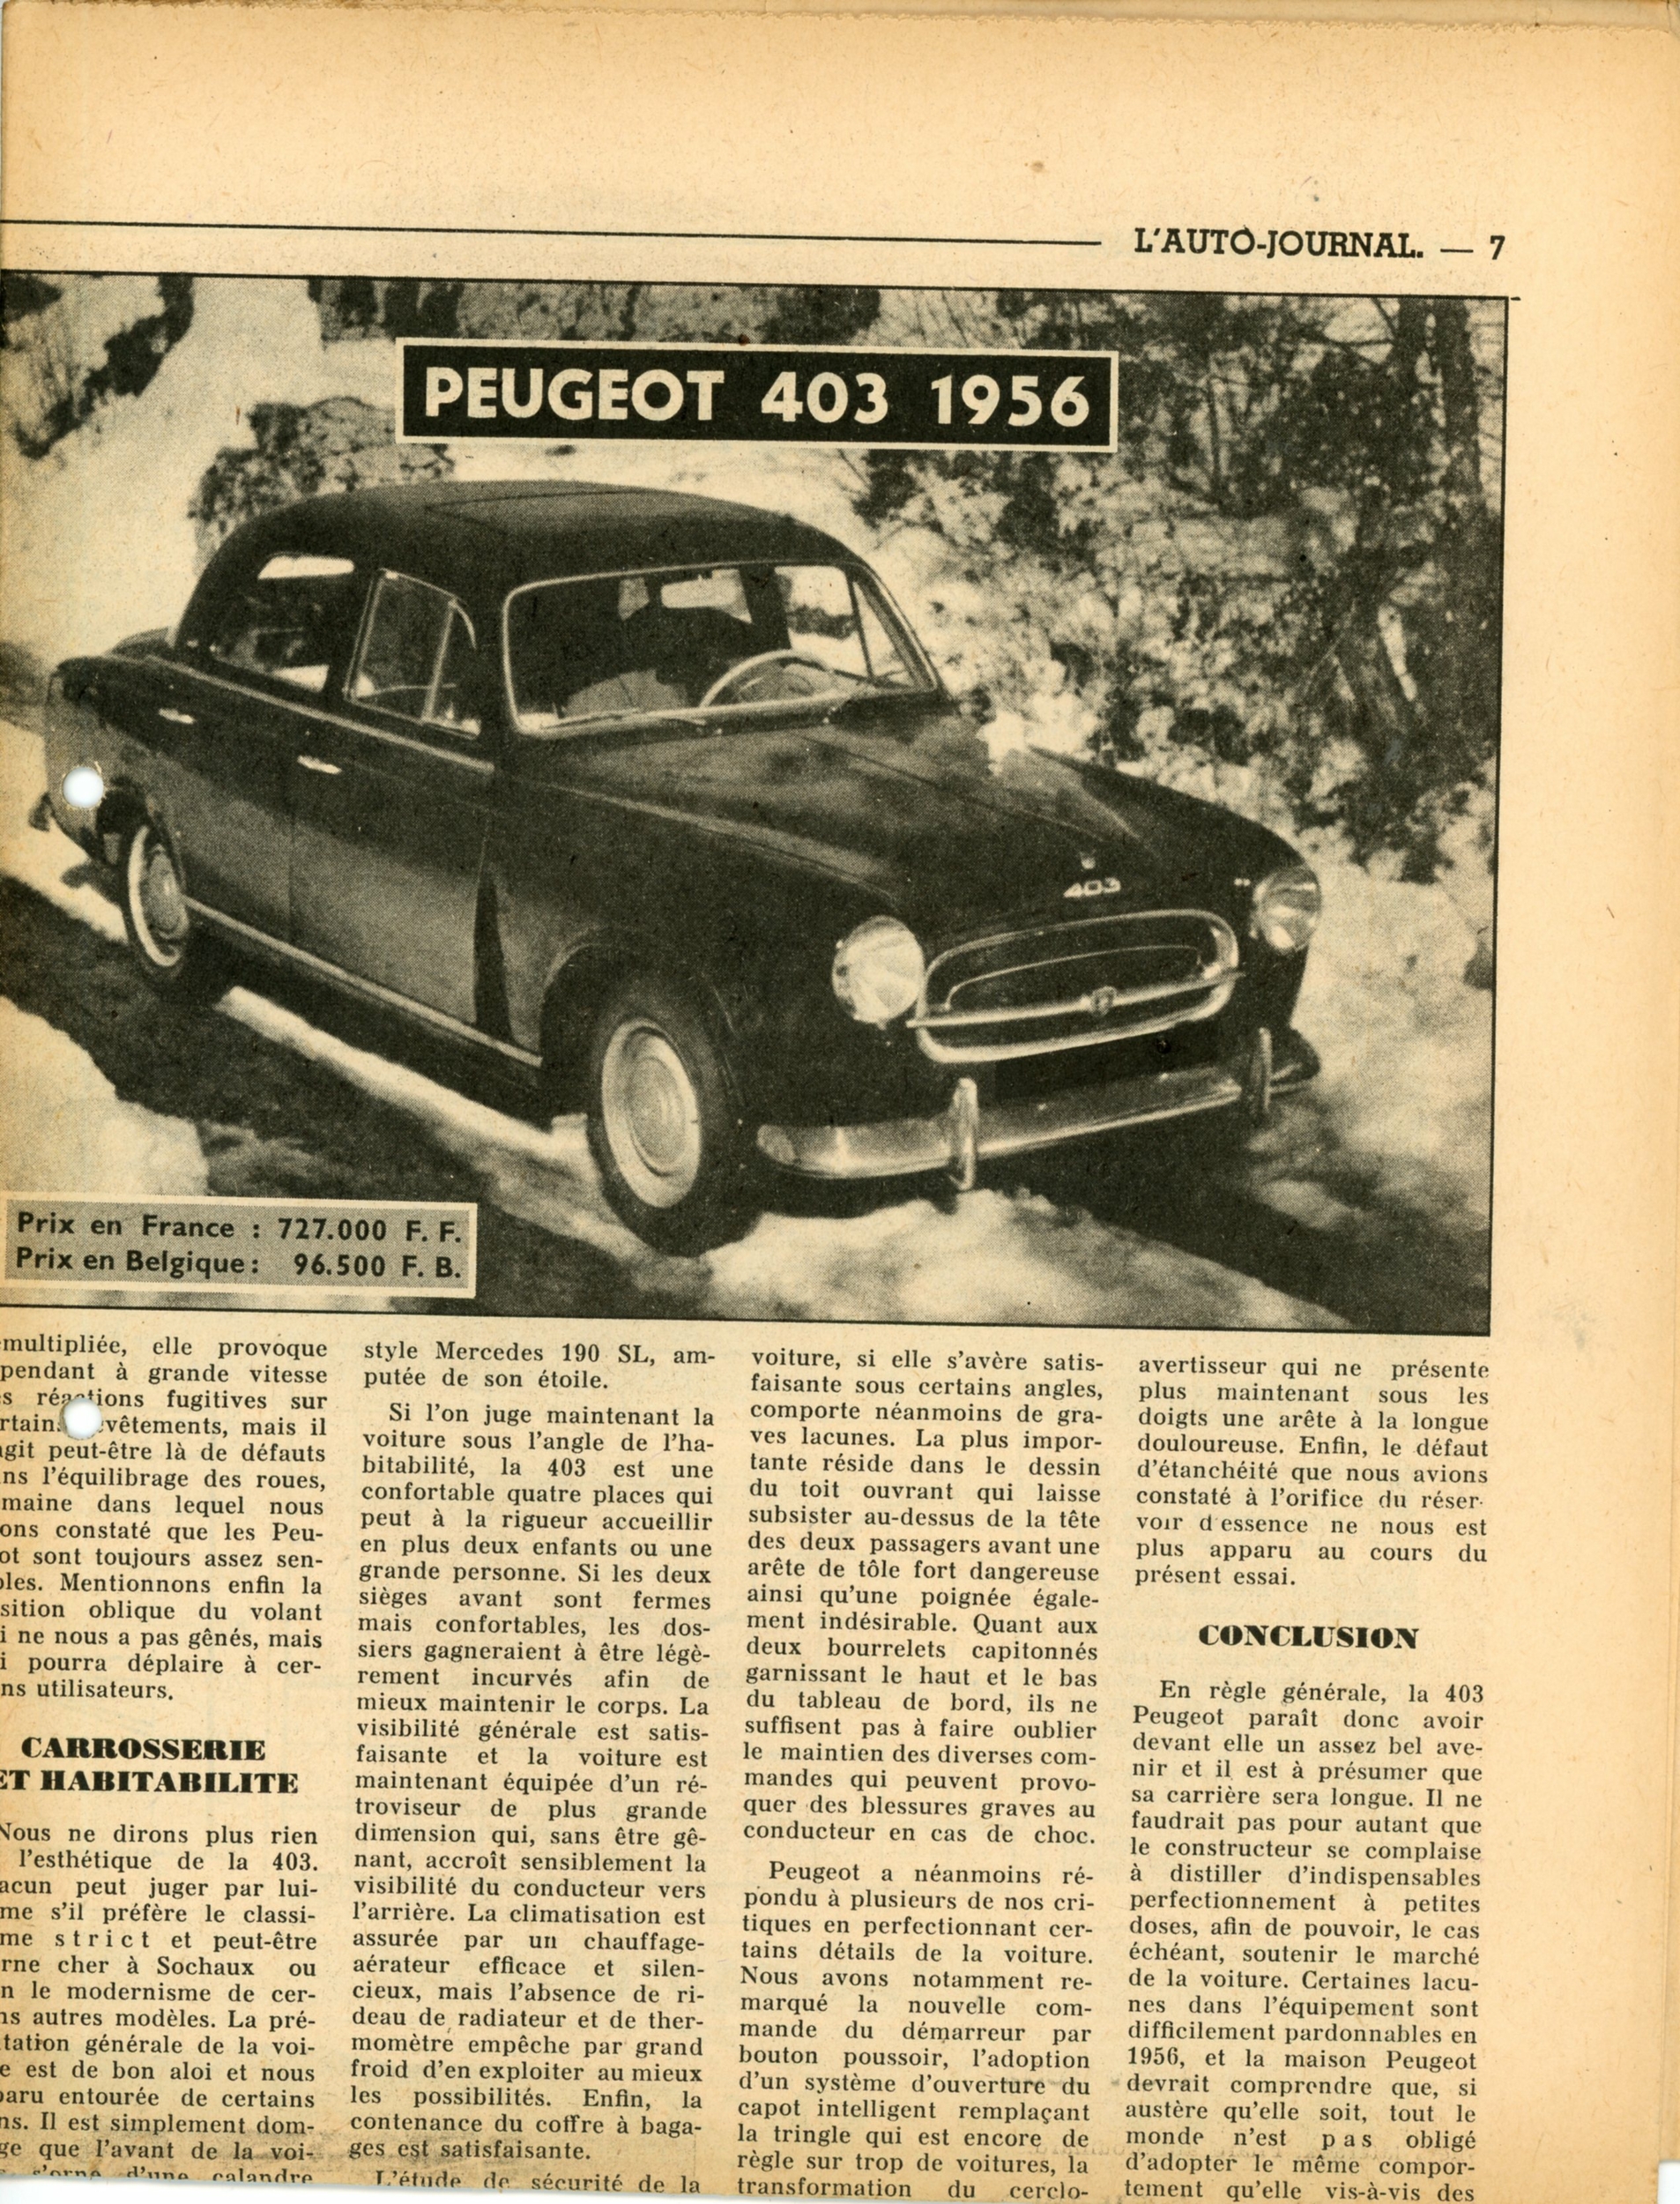 PEUGEOT 403 ARTICLE DE PRESSE VOITURE AUTOMOBILE 1956